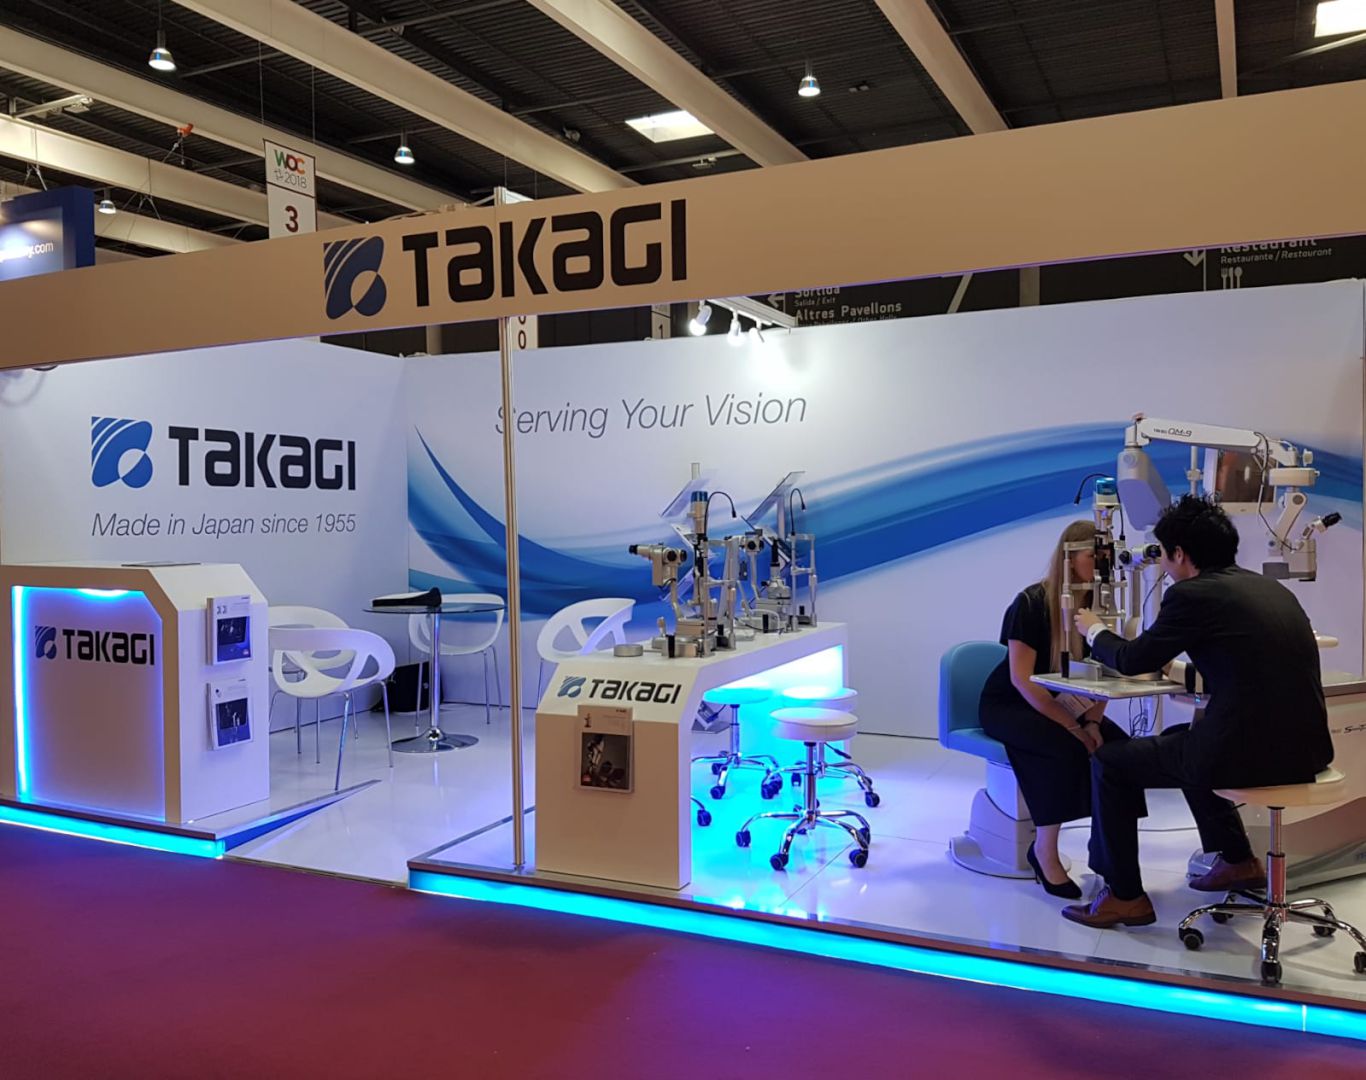 Stand de takagi en el congreso mundial de oftalmología